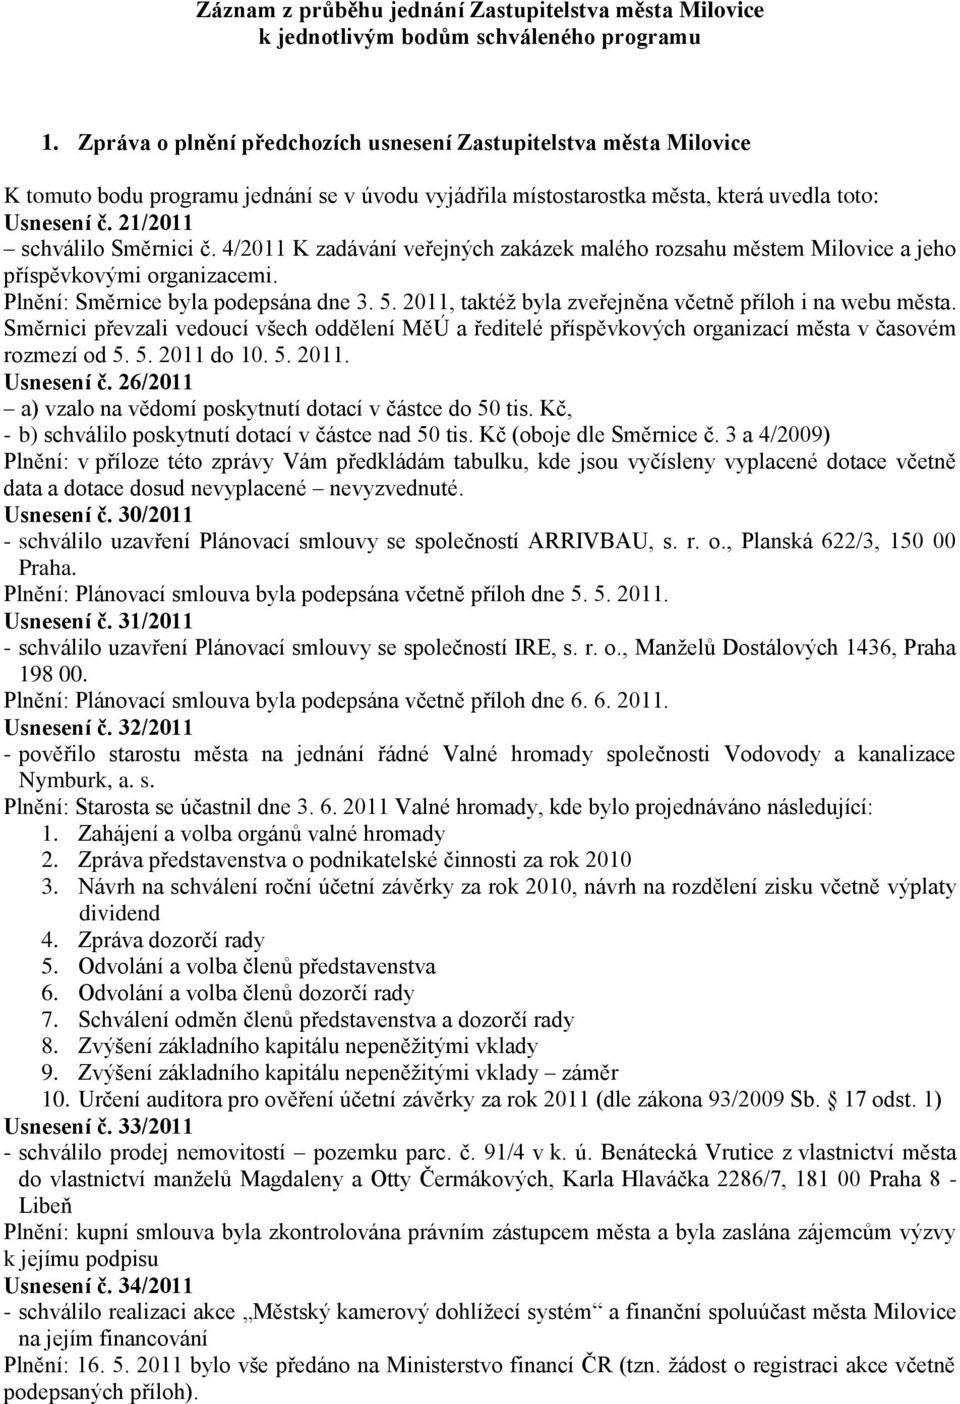 21/2011 schválilo Směrnici č. 4/2011 K zadávání veřejných zakázek malého rozsahu městem Milovice a jeho příspěvkovými organizacemi. Plnění: Směrnice byla podepsána dne 3. 5.